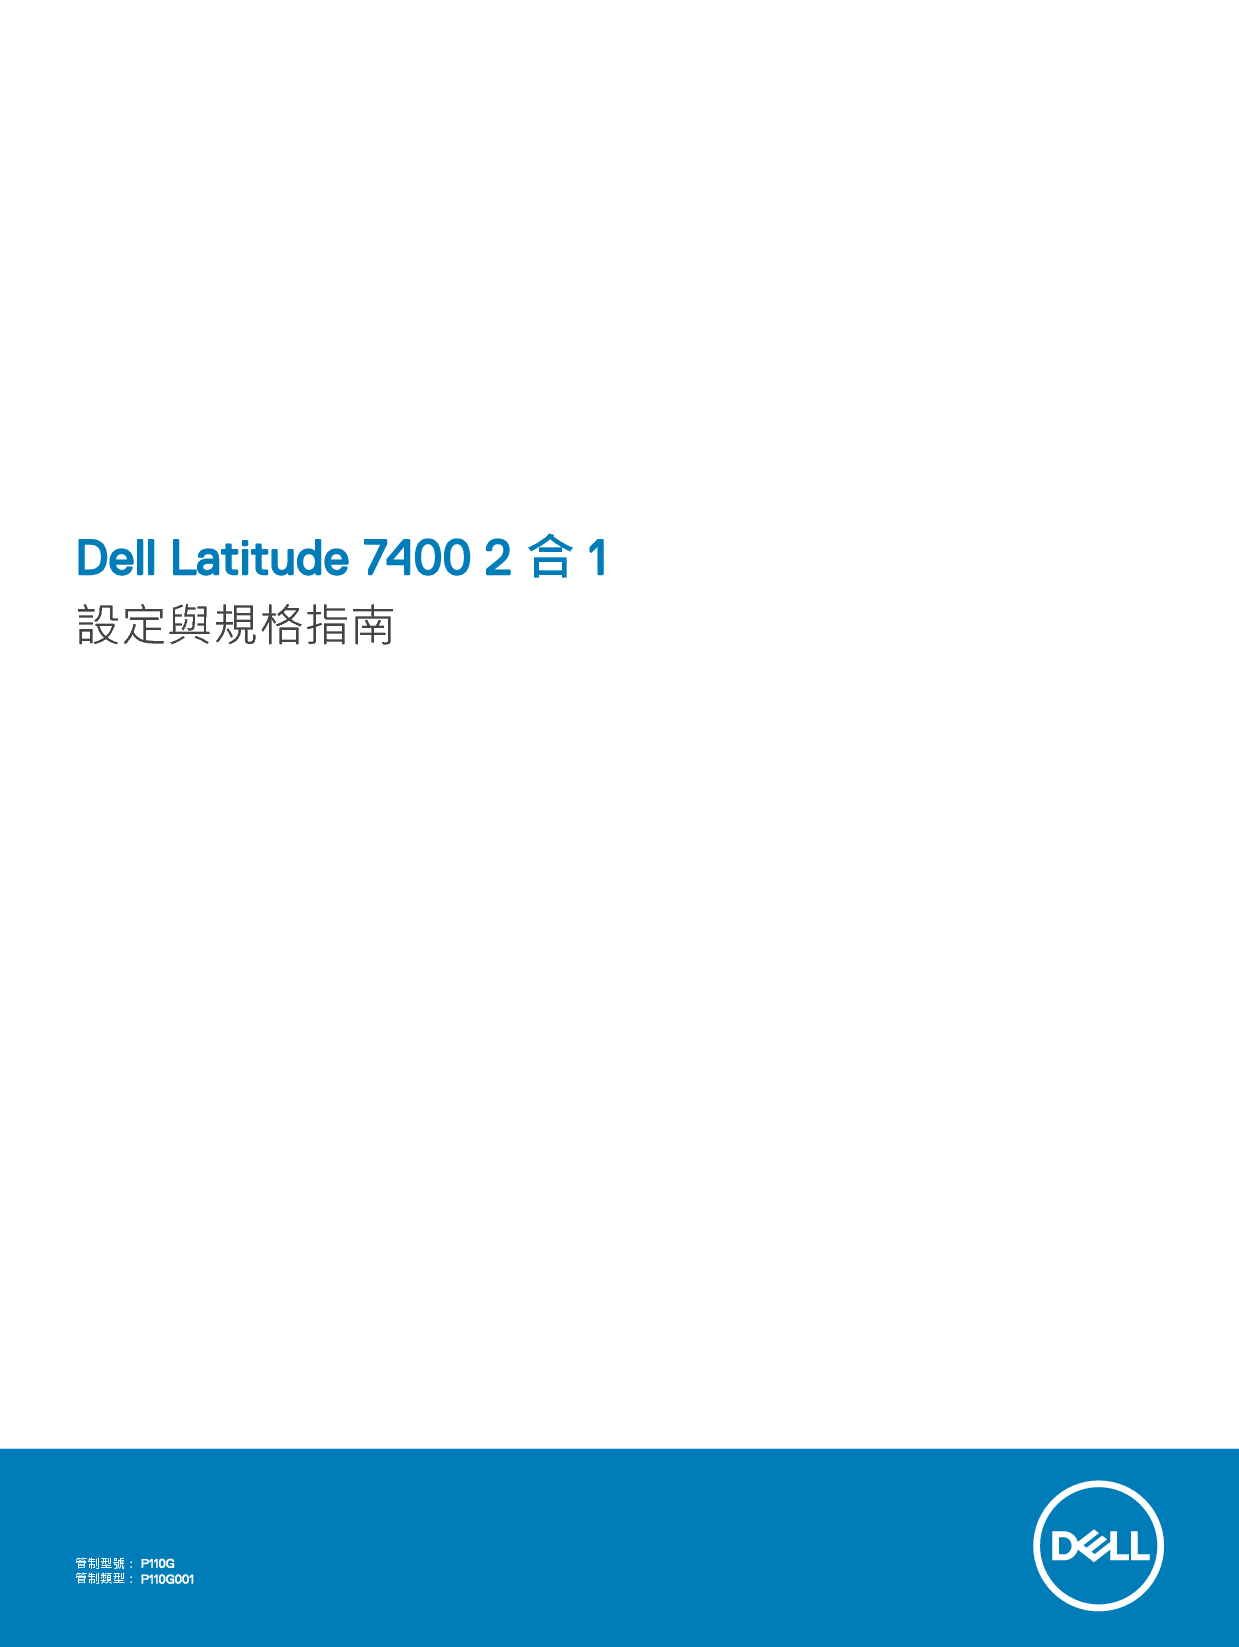 戴尔 Dell Latitude 7400 2-IN-1 繁体 用户手册 封面